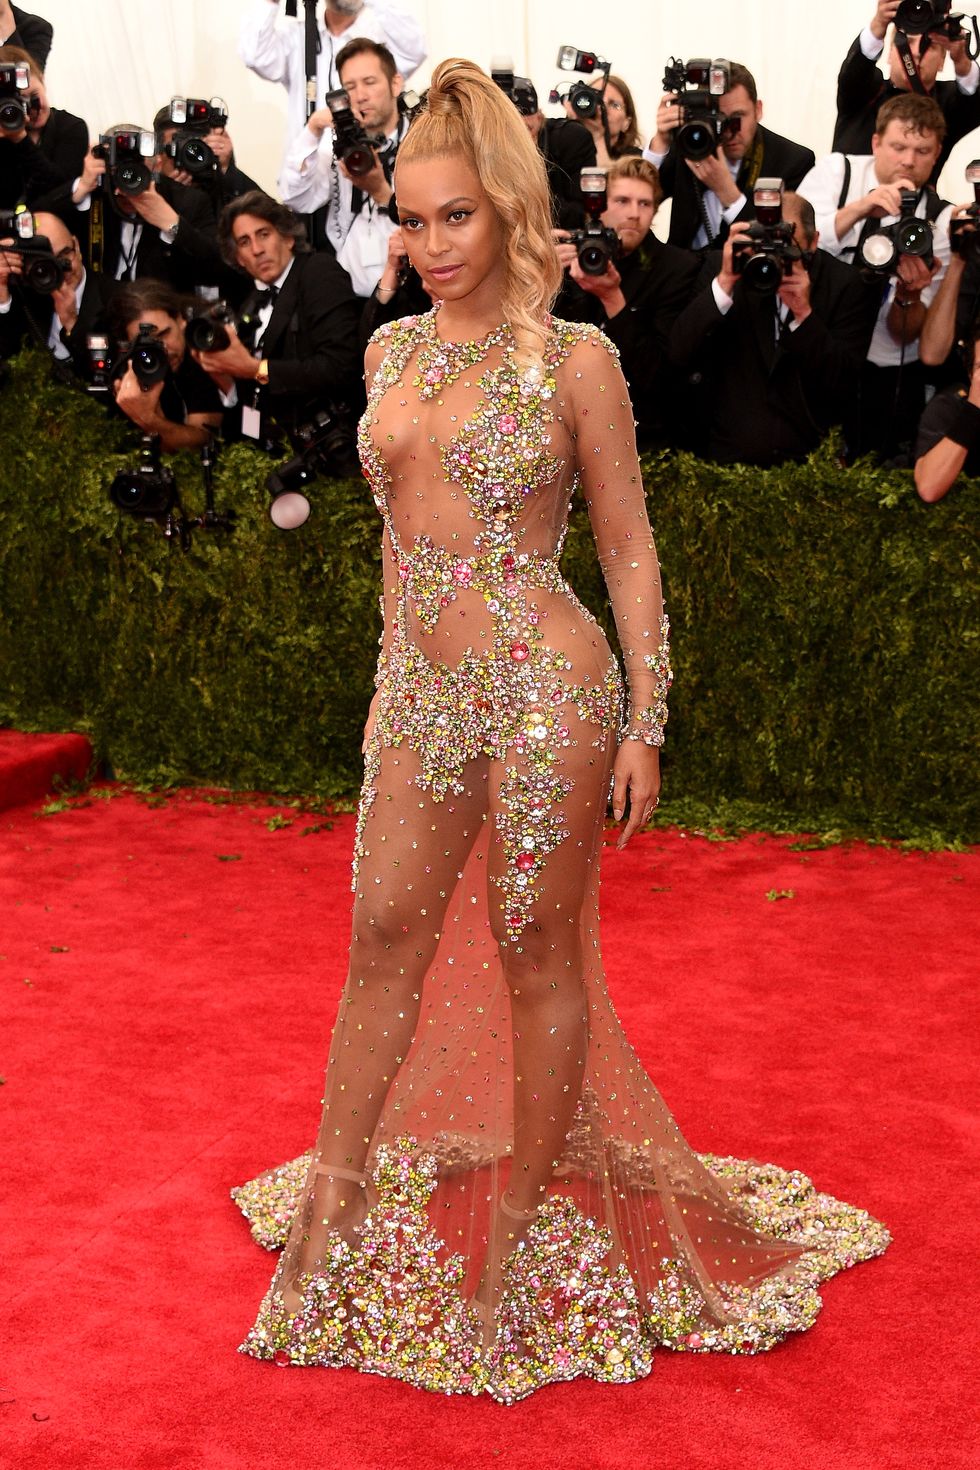 <p><strong data-redactor-tag="strong" data-verified="redactor">Beyoncé </strong>mostra&nbsp;orgogliosamente la sua sessualità in un abito di&nbsp;paillettes di <strong data-redactor-tag="strong" data-verified="redactor">Givenchy </strong>al Met Ball 2015. Sembra che questo vestito&nbsp;non sia stato la sua prima scelta: mentre si stava dirigendo all'evento, dopo aver visto in diretta i <strong data-redactor-tag="strong" data-verified="redactor">look </strong>delle altre invitate, ha chiesto all'autista di tornare indietro per cambiare l'abito rosso che aveva scelto e optando per questo di Givenchy.<span class="redactor-invisible-space" data-verified="redactor" data-redactor-tag="span" data-redactor-class="redactor-invisible-space"></span></p>